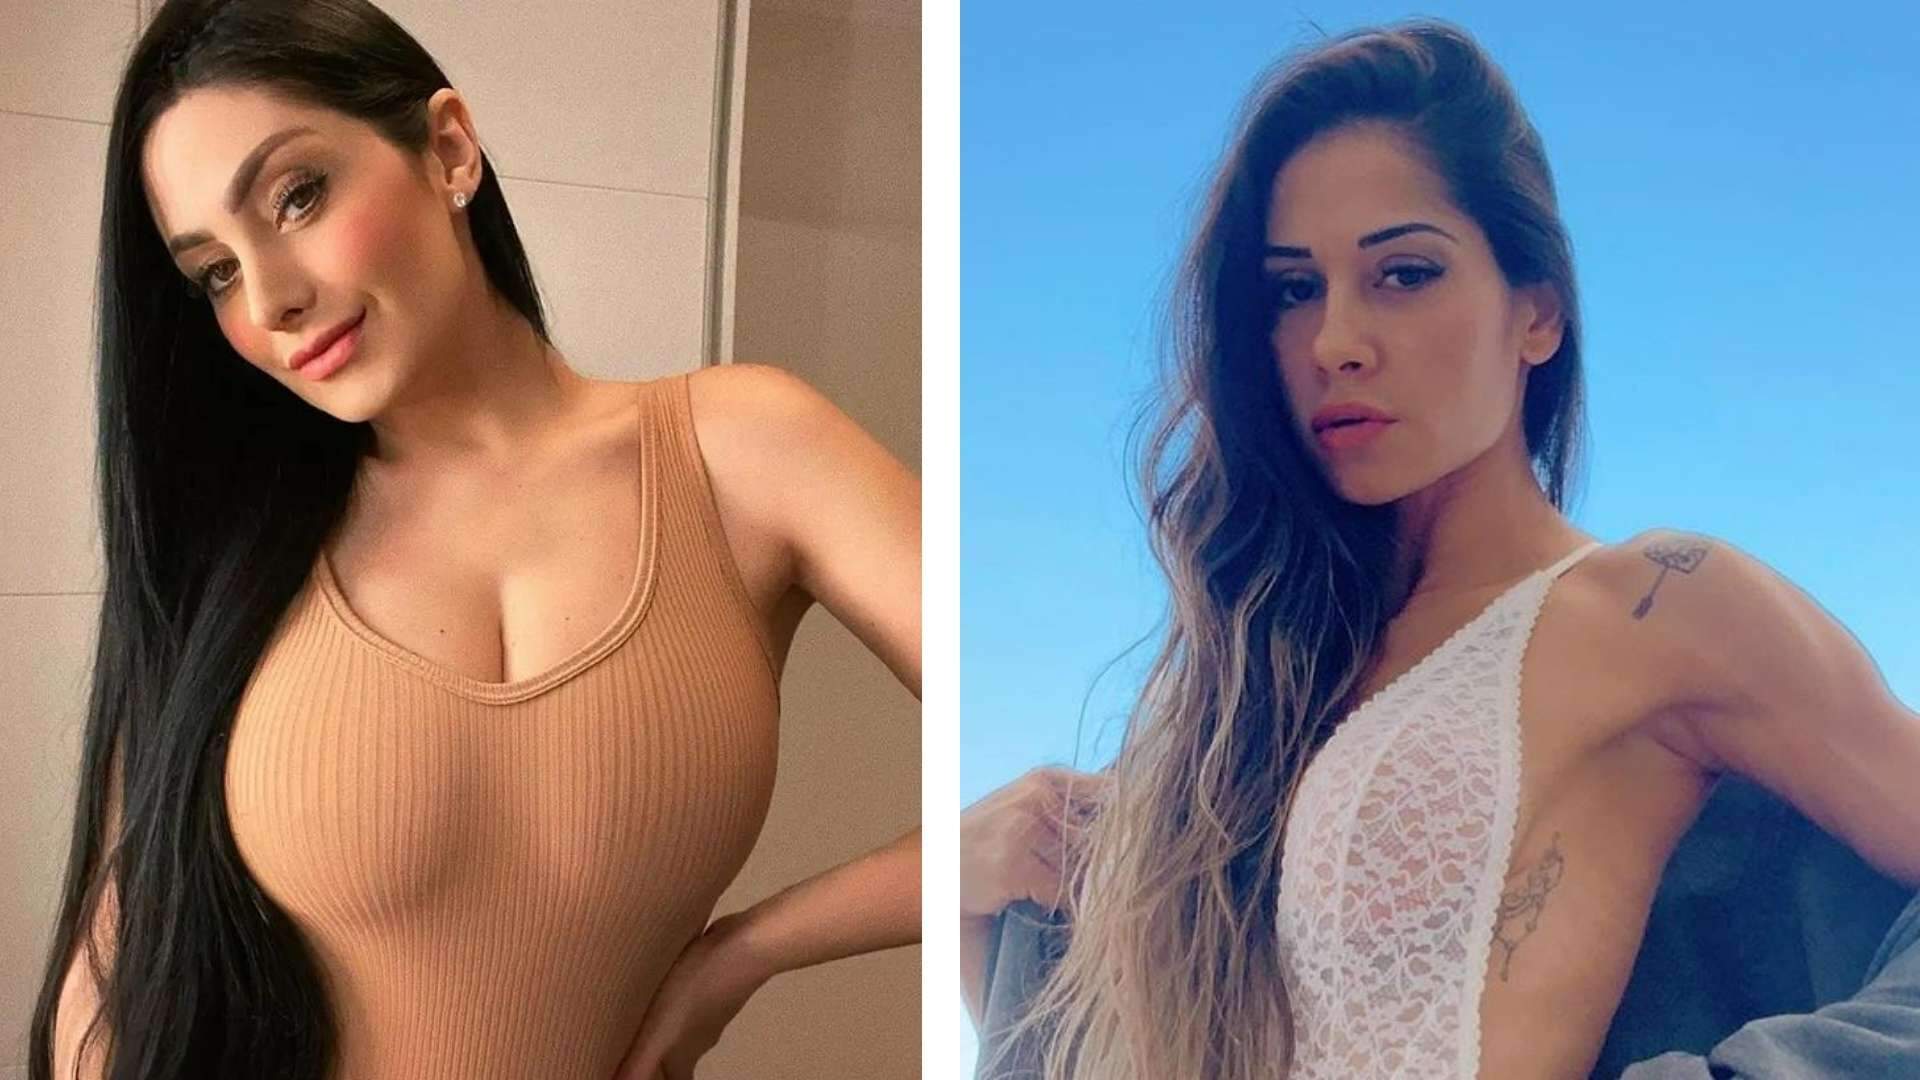 Francine Piaia relembra treta com Maíra Cardi no Big Brother Brasil: “Sei ofender” - Metropolitana FM